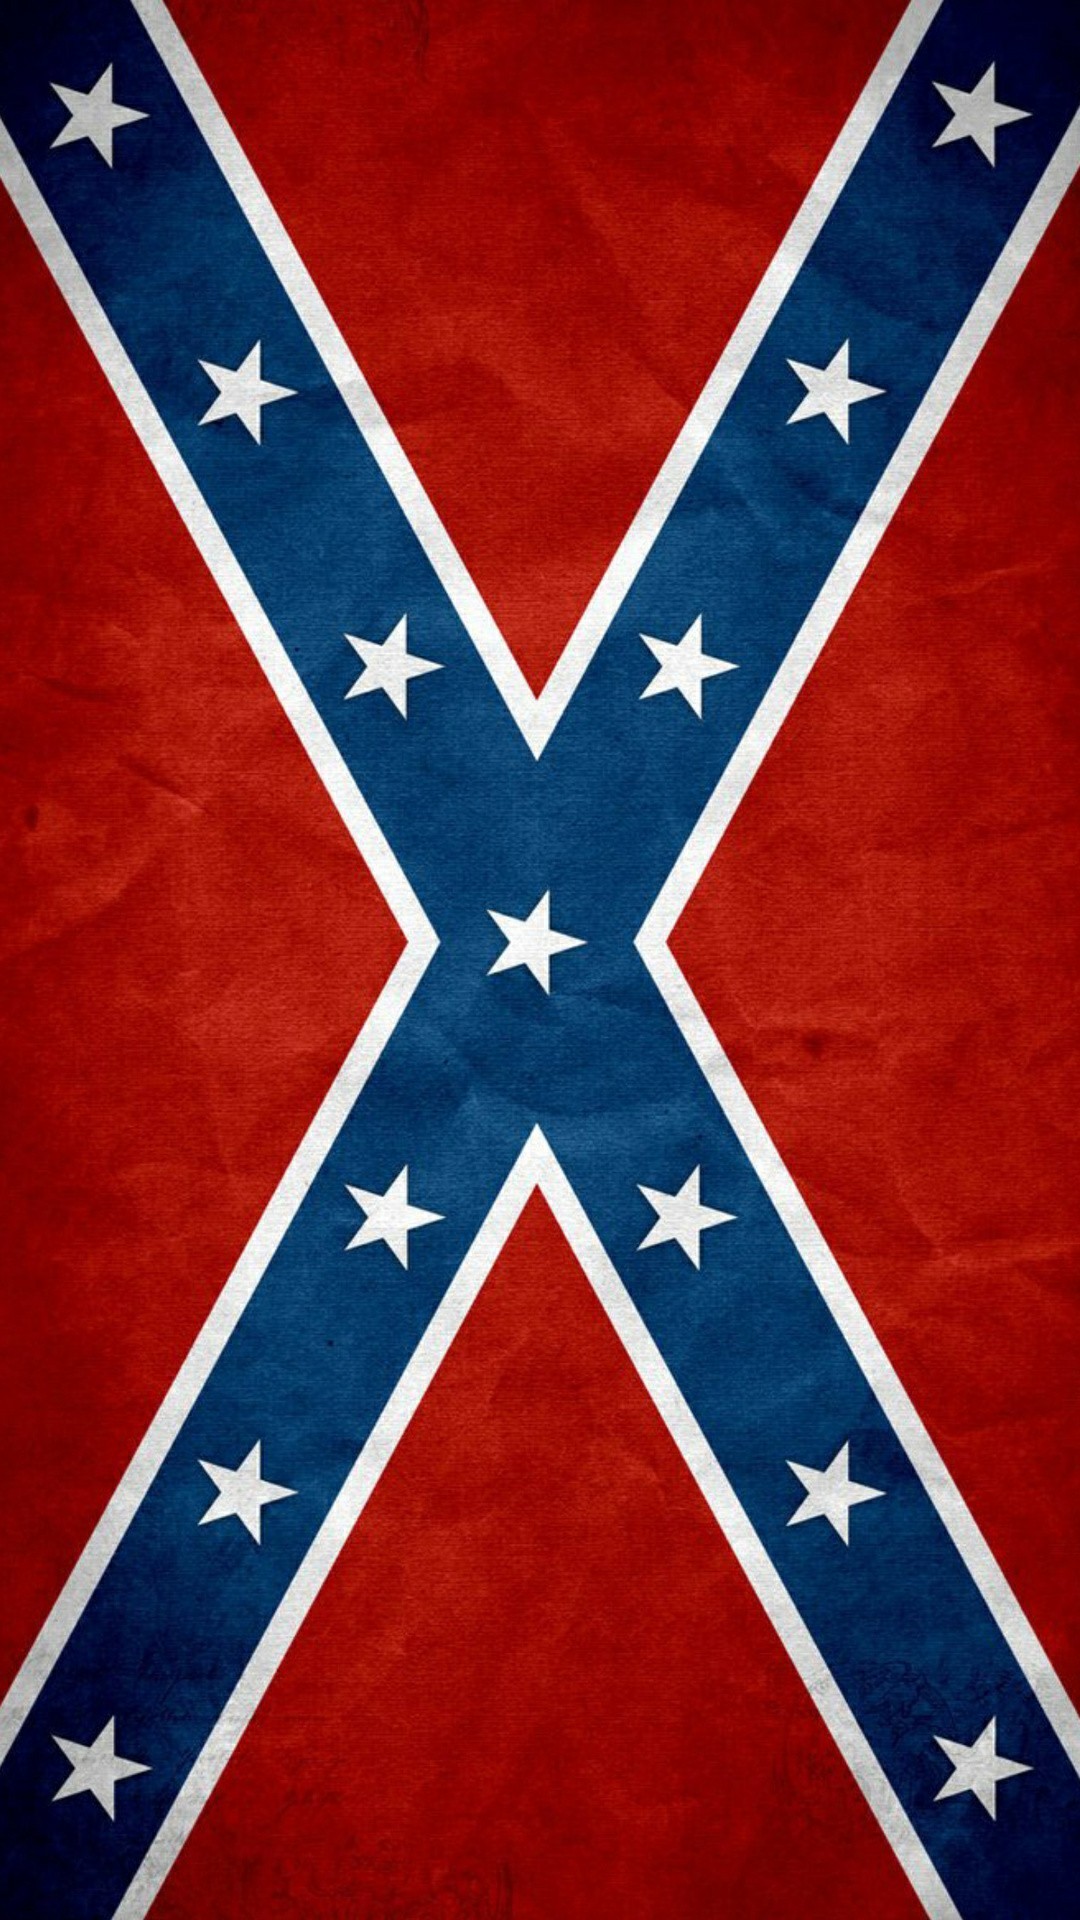 Confederate Flag wallpaper.